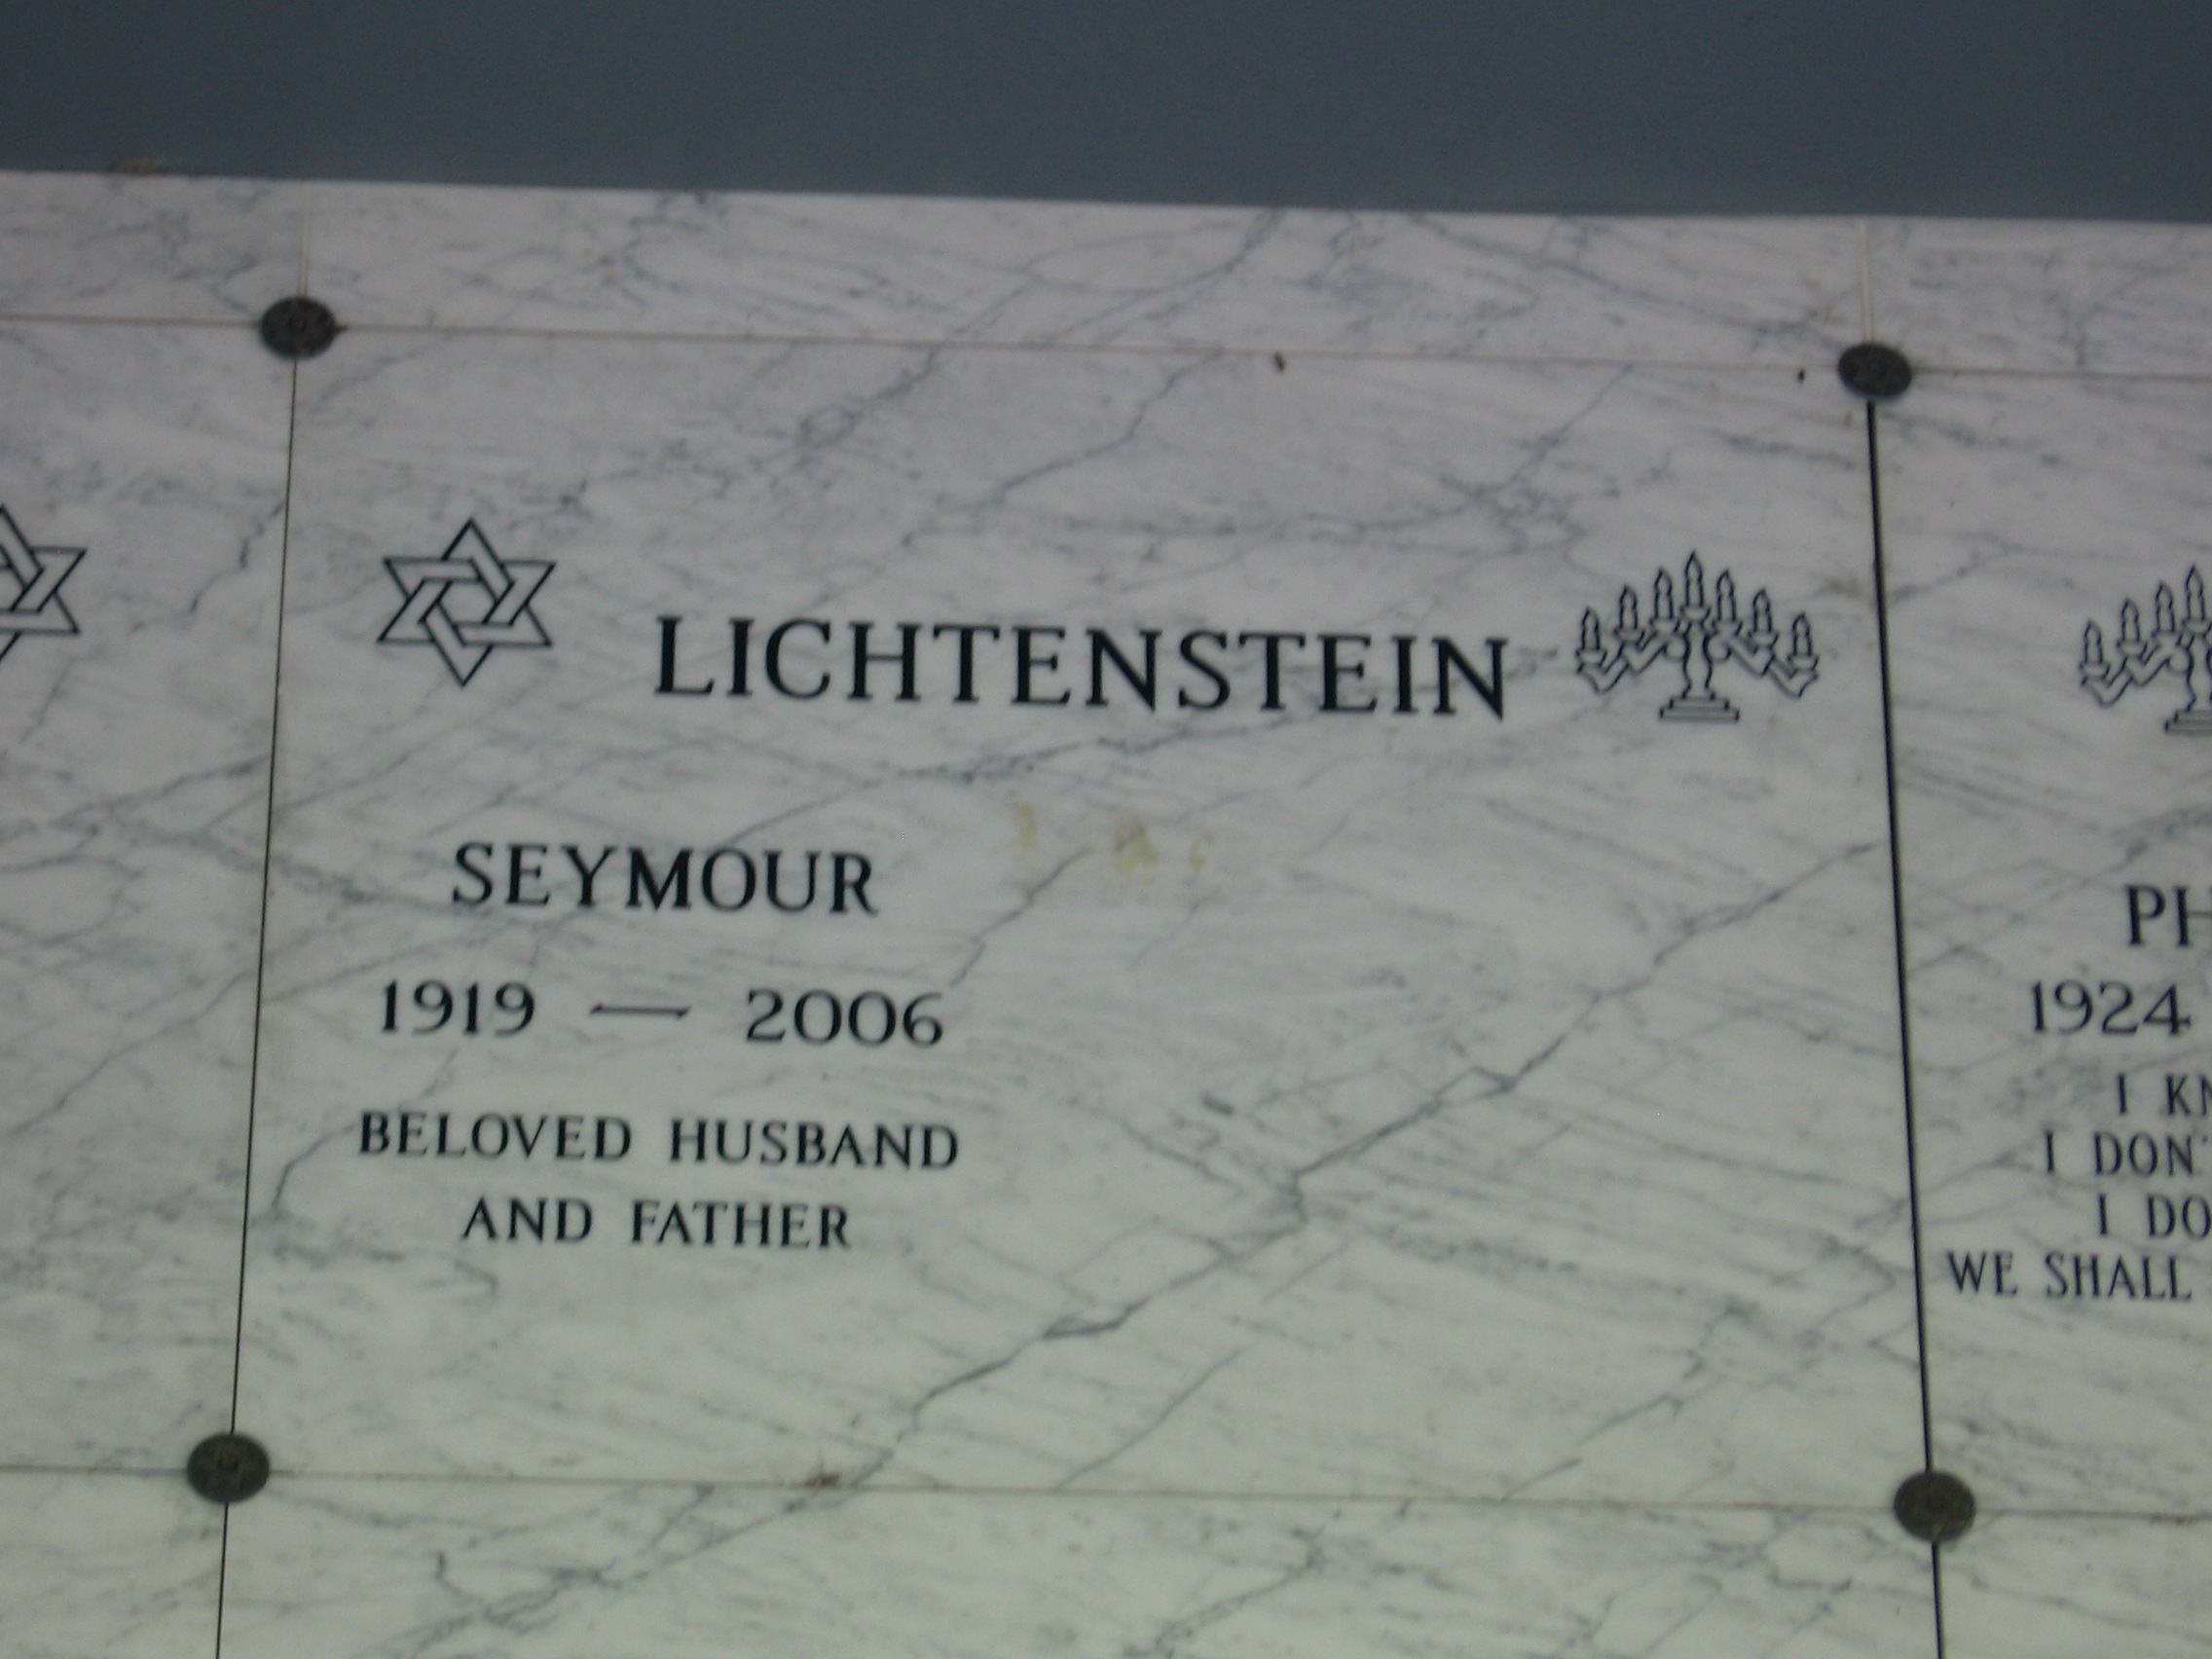 Seymour Lichtenstein